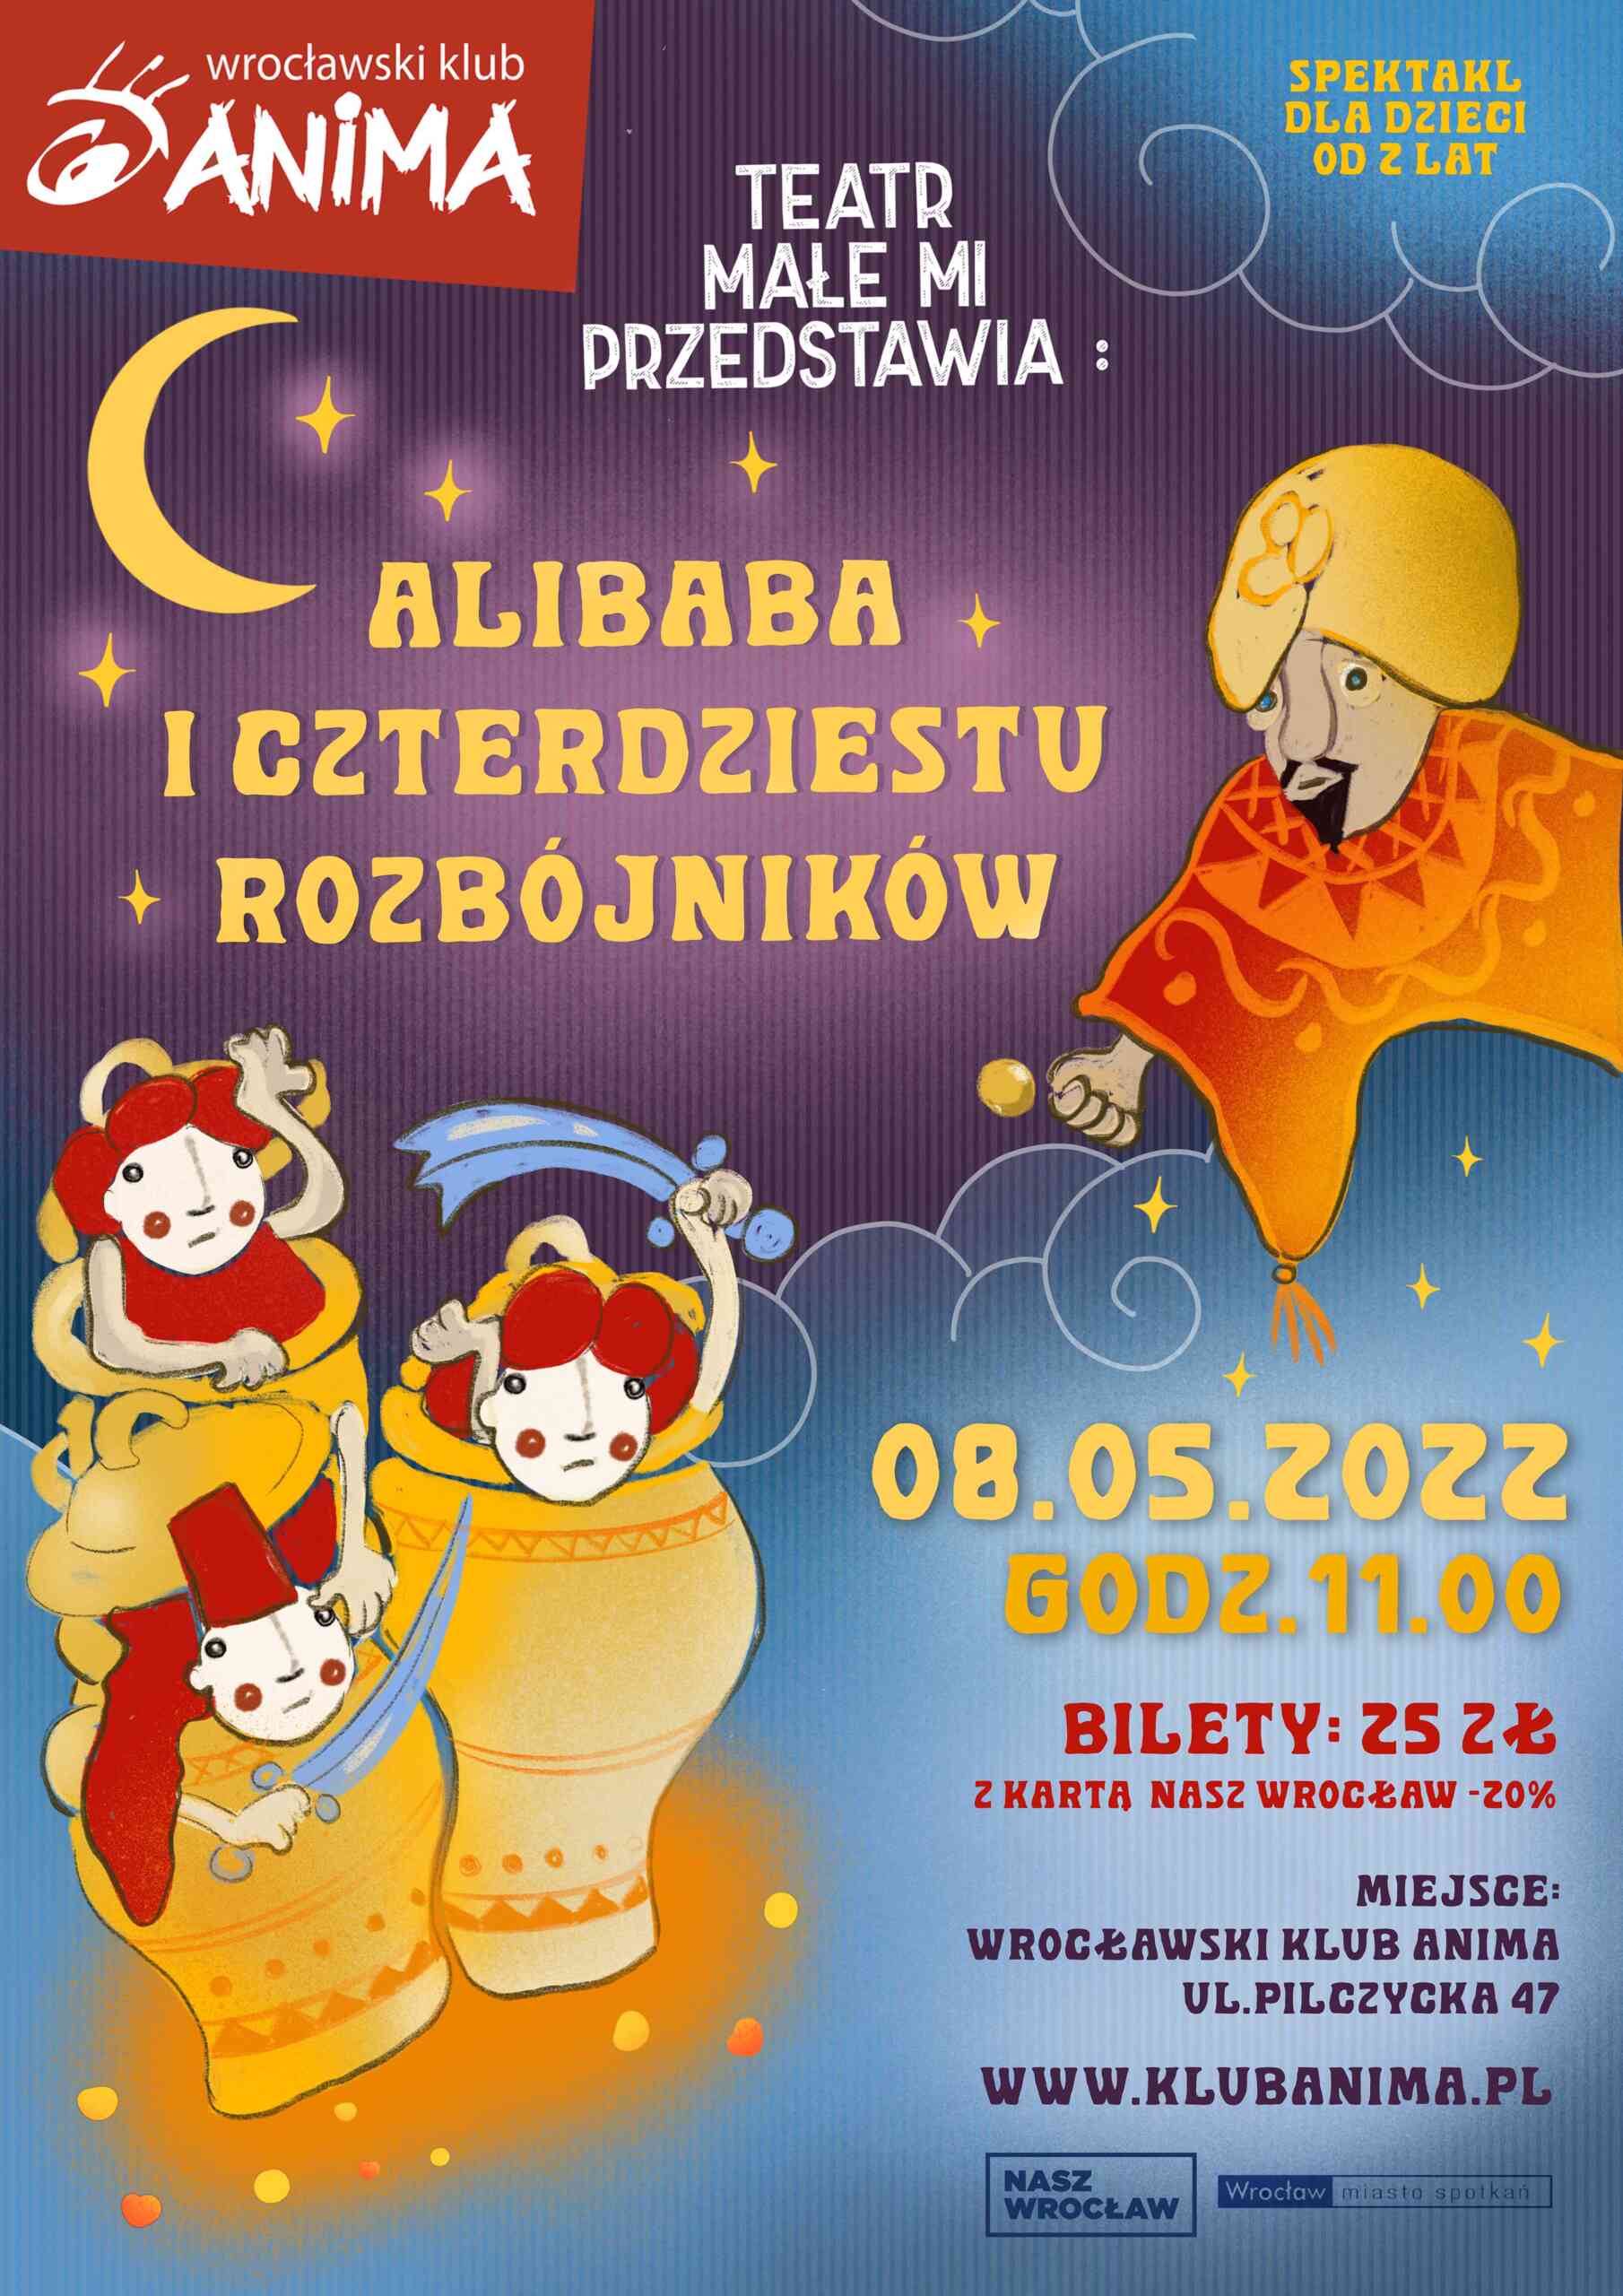 Spektakl dla dzieci pt. „Alibaba i czterdziestu rozbójników” –08.05.2022